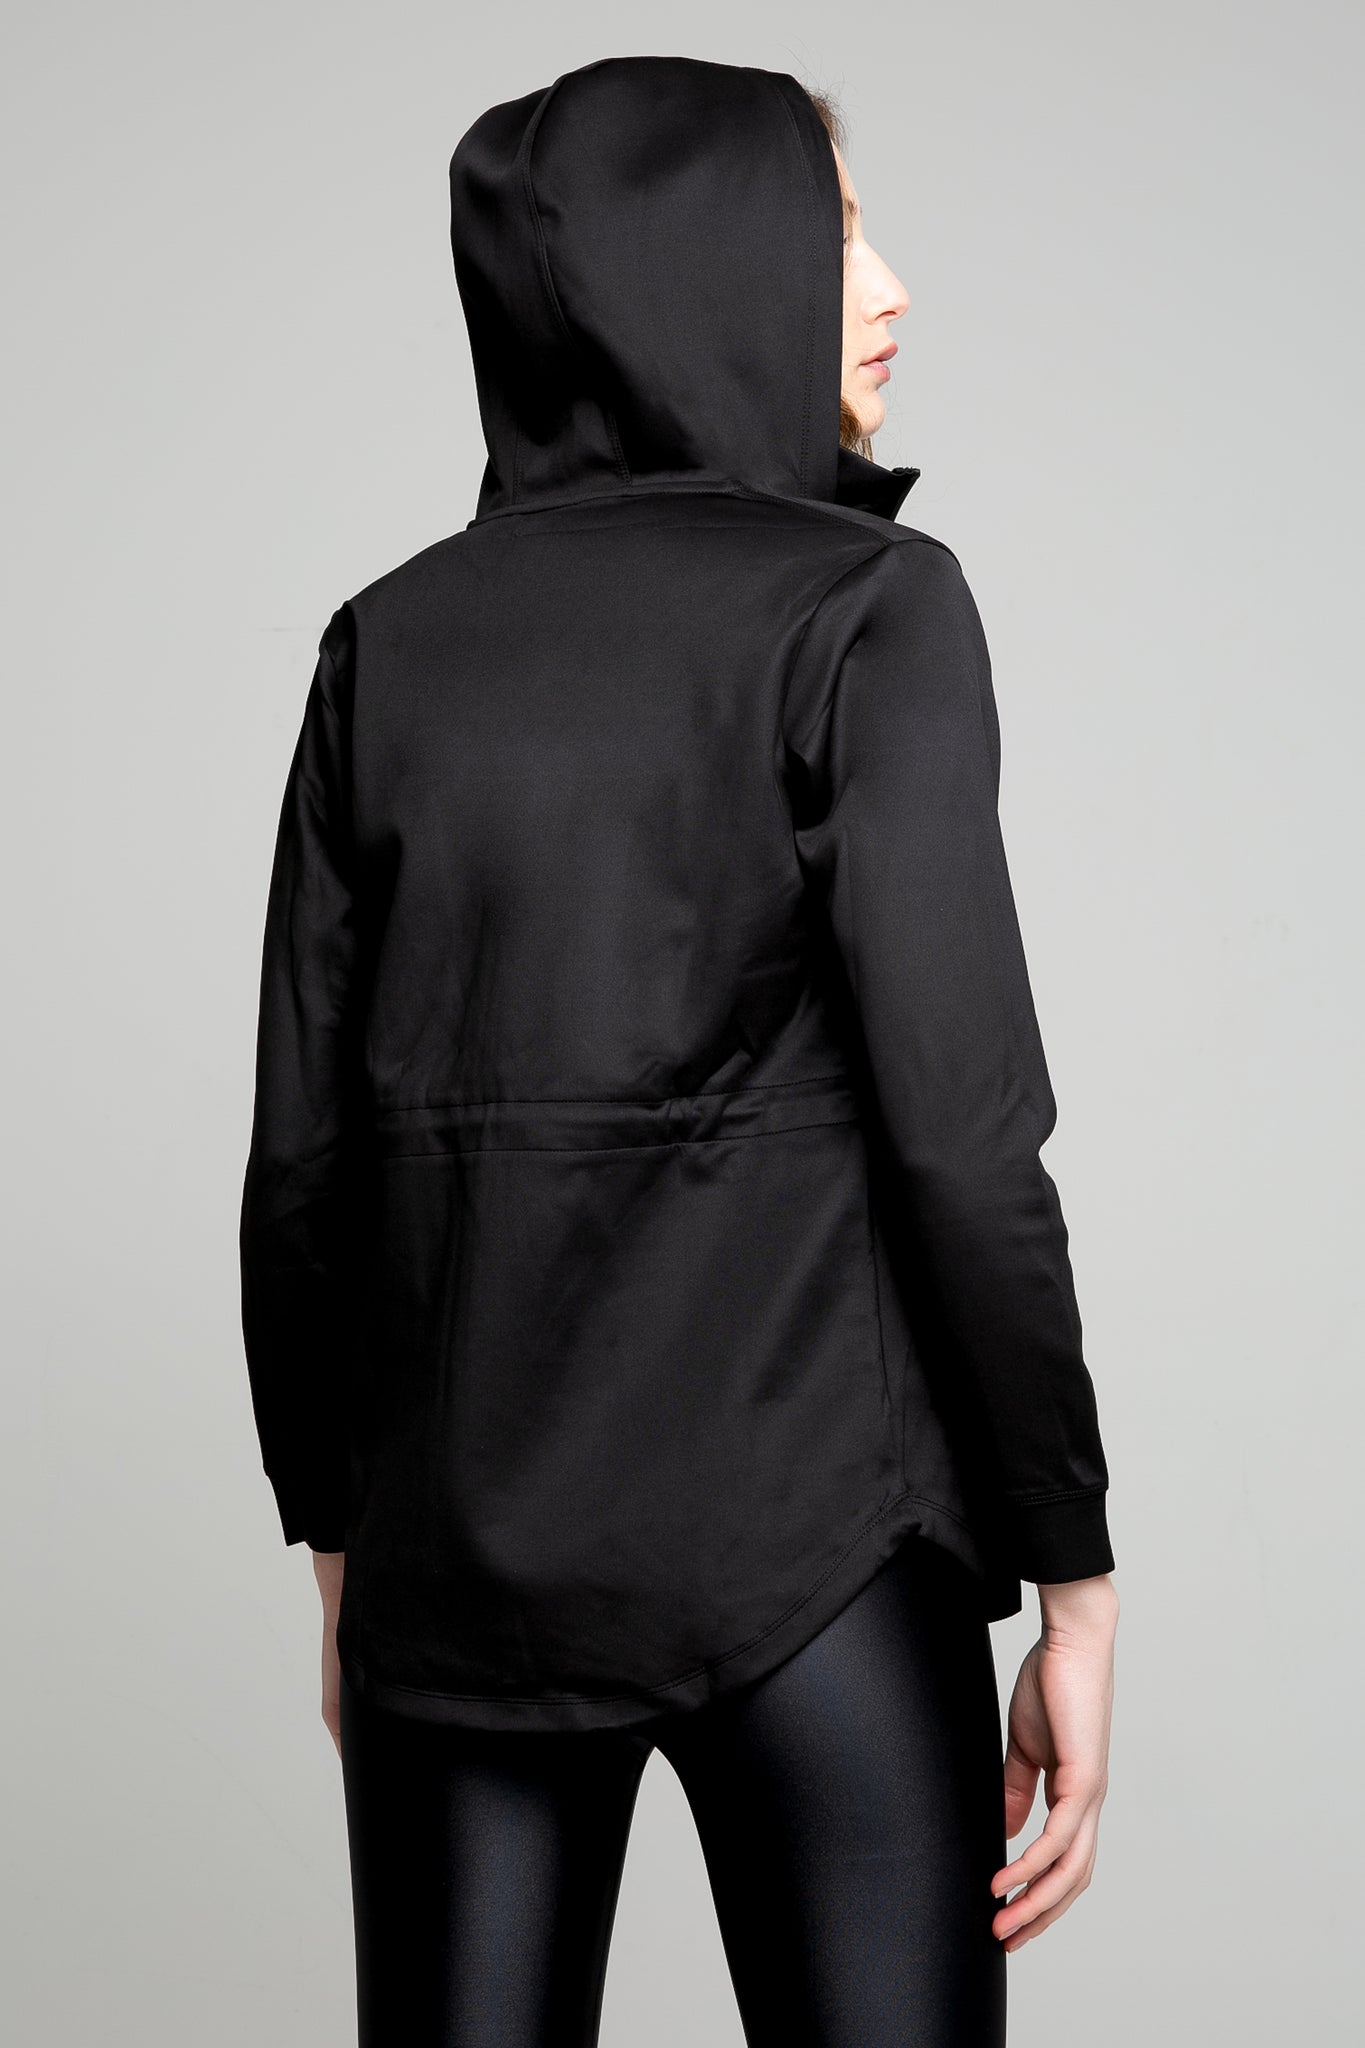 Cadence jacket in shiny black